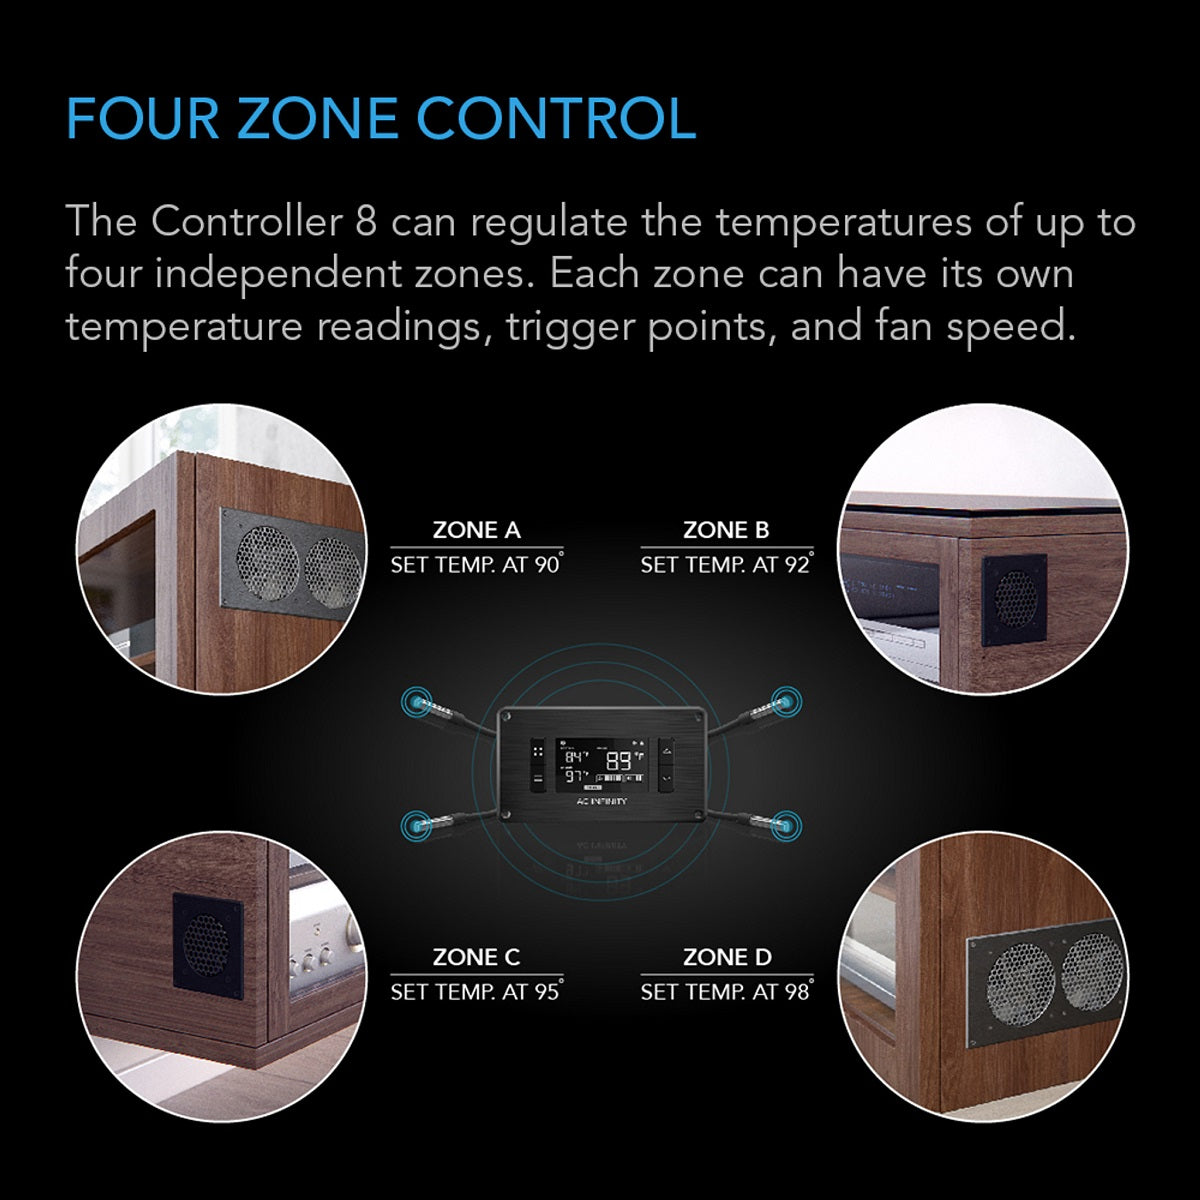 AC Infinity Controller 8 - controlla la temperatura e l'umidità in 4 zone